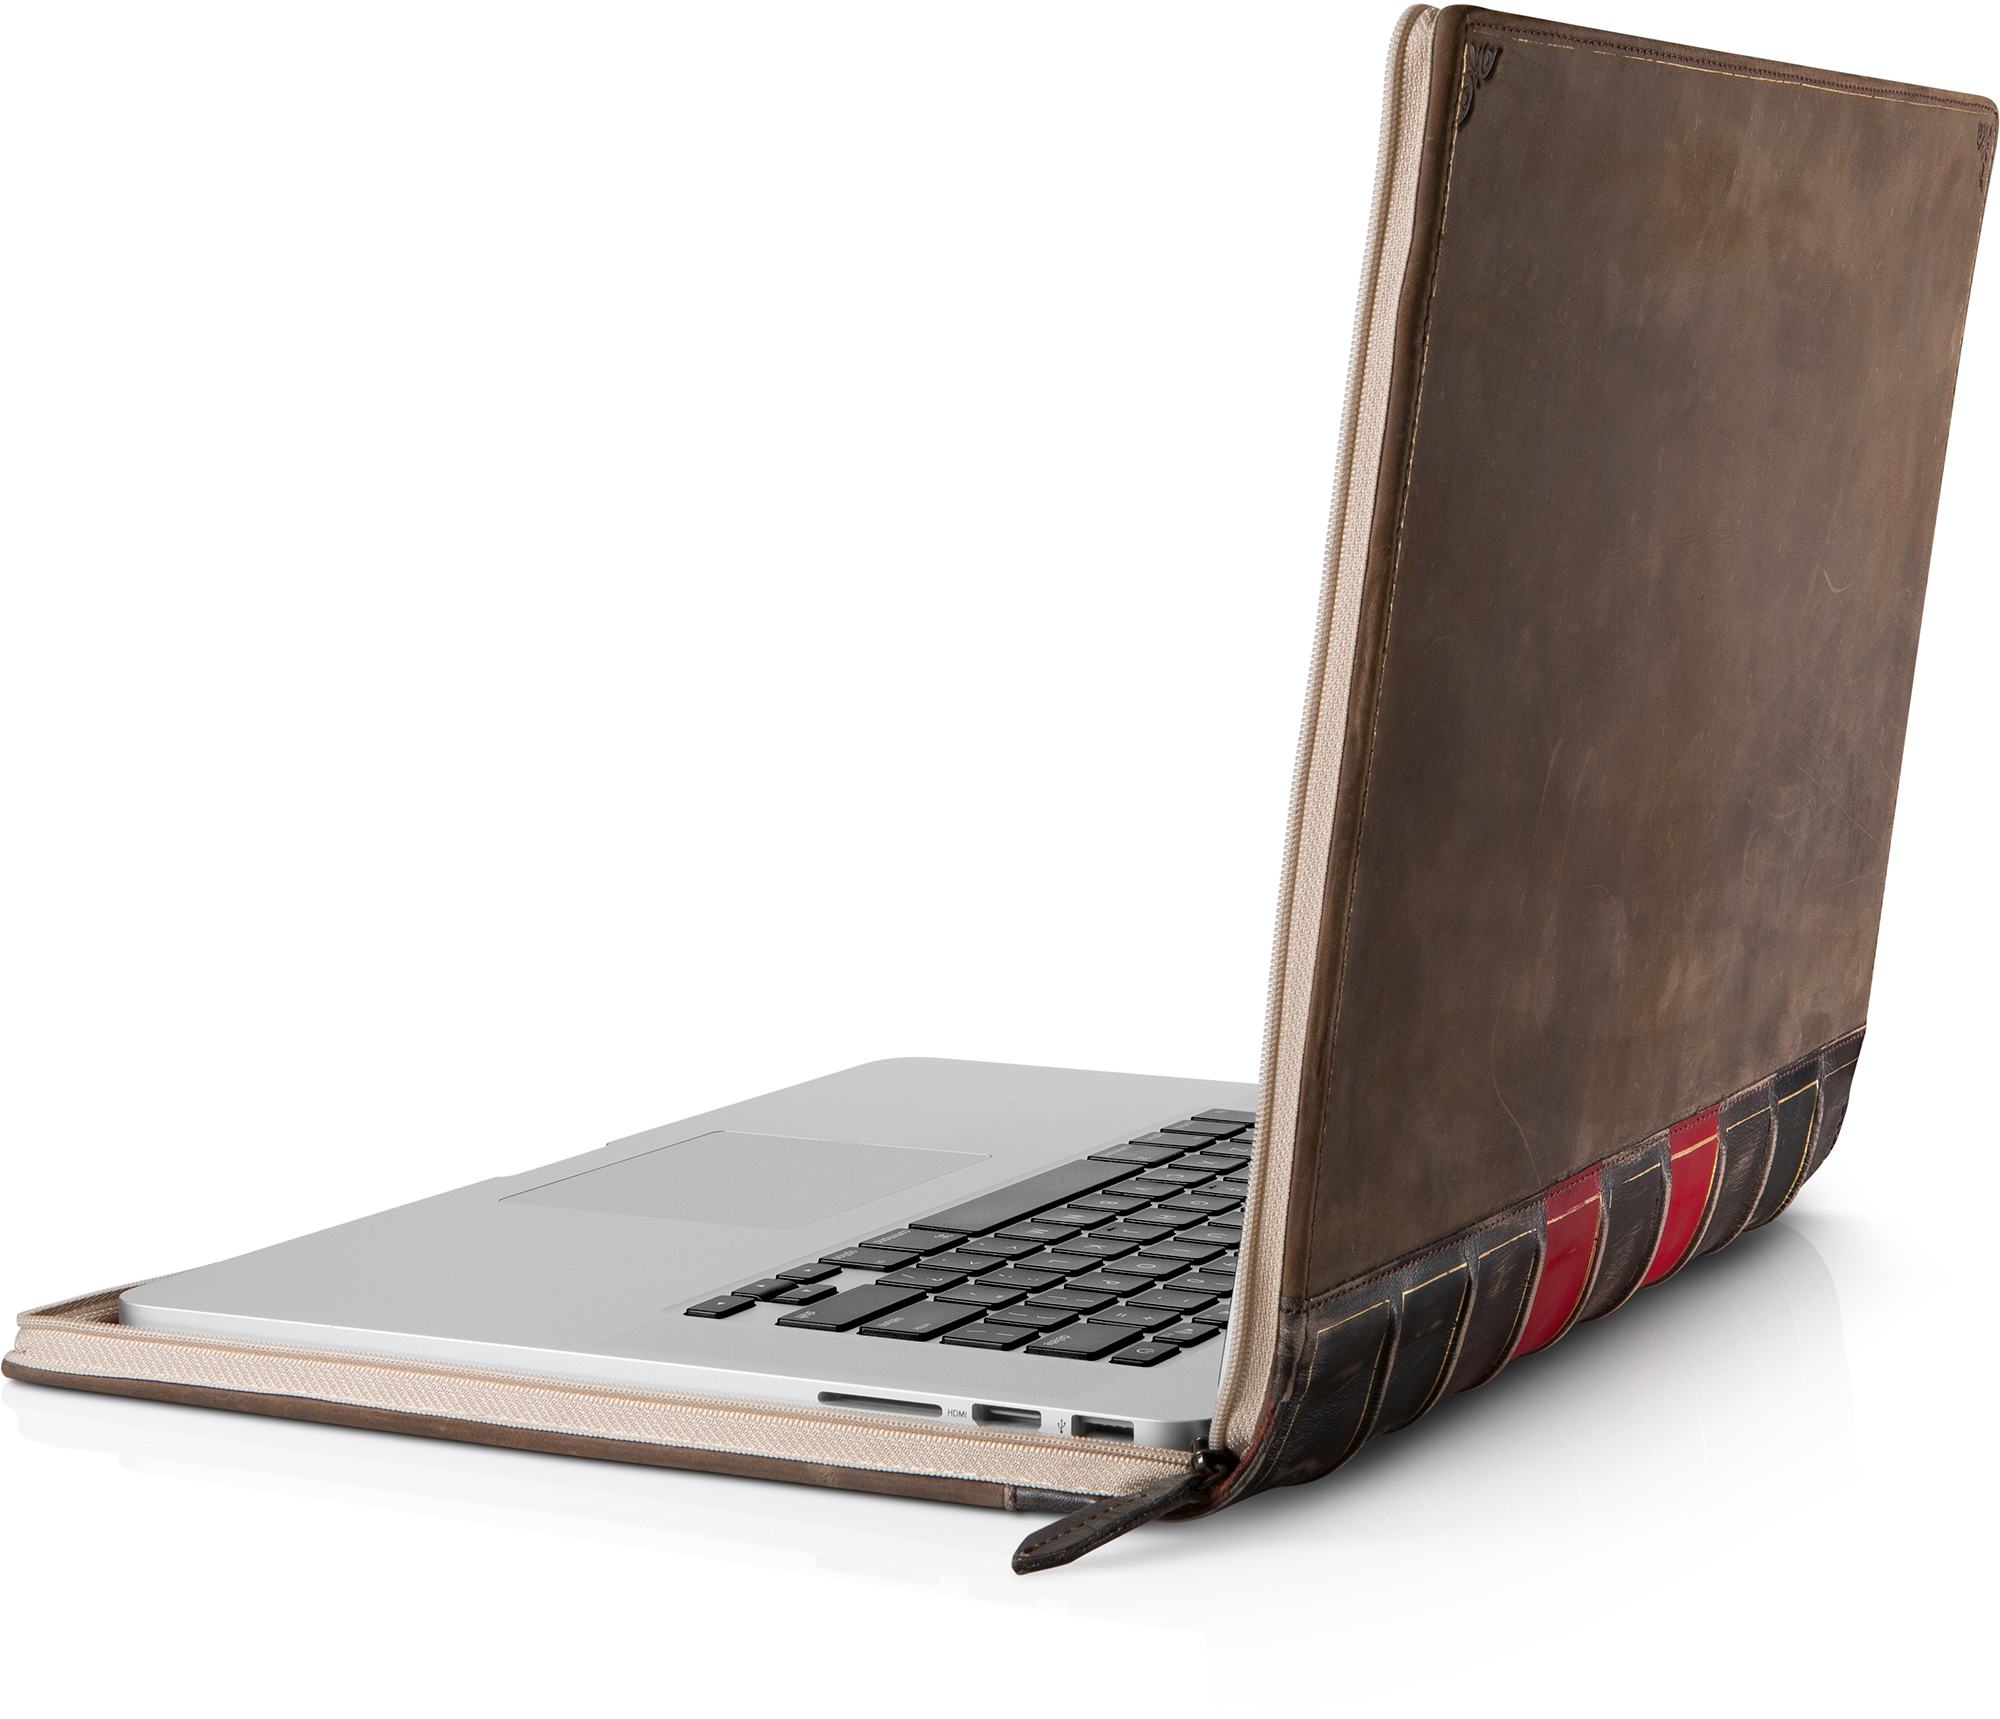 Book BookBook, klassikaline kohver firmalt Twelve South, on nüüd saadaval ka MacBook Pro Retina jaoks